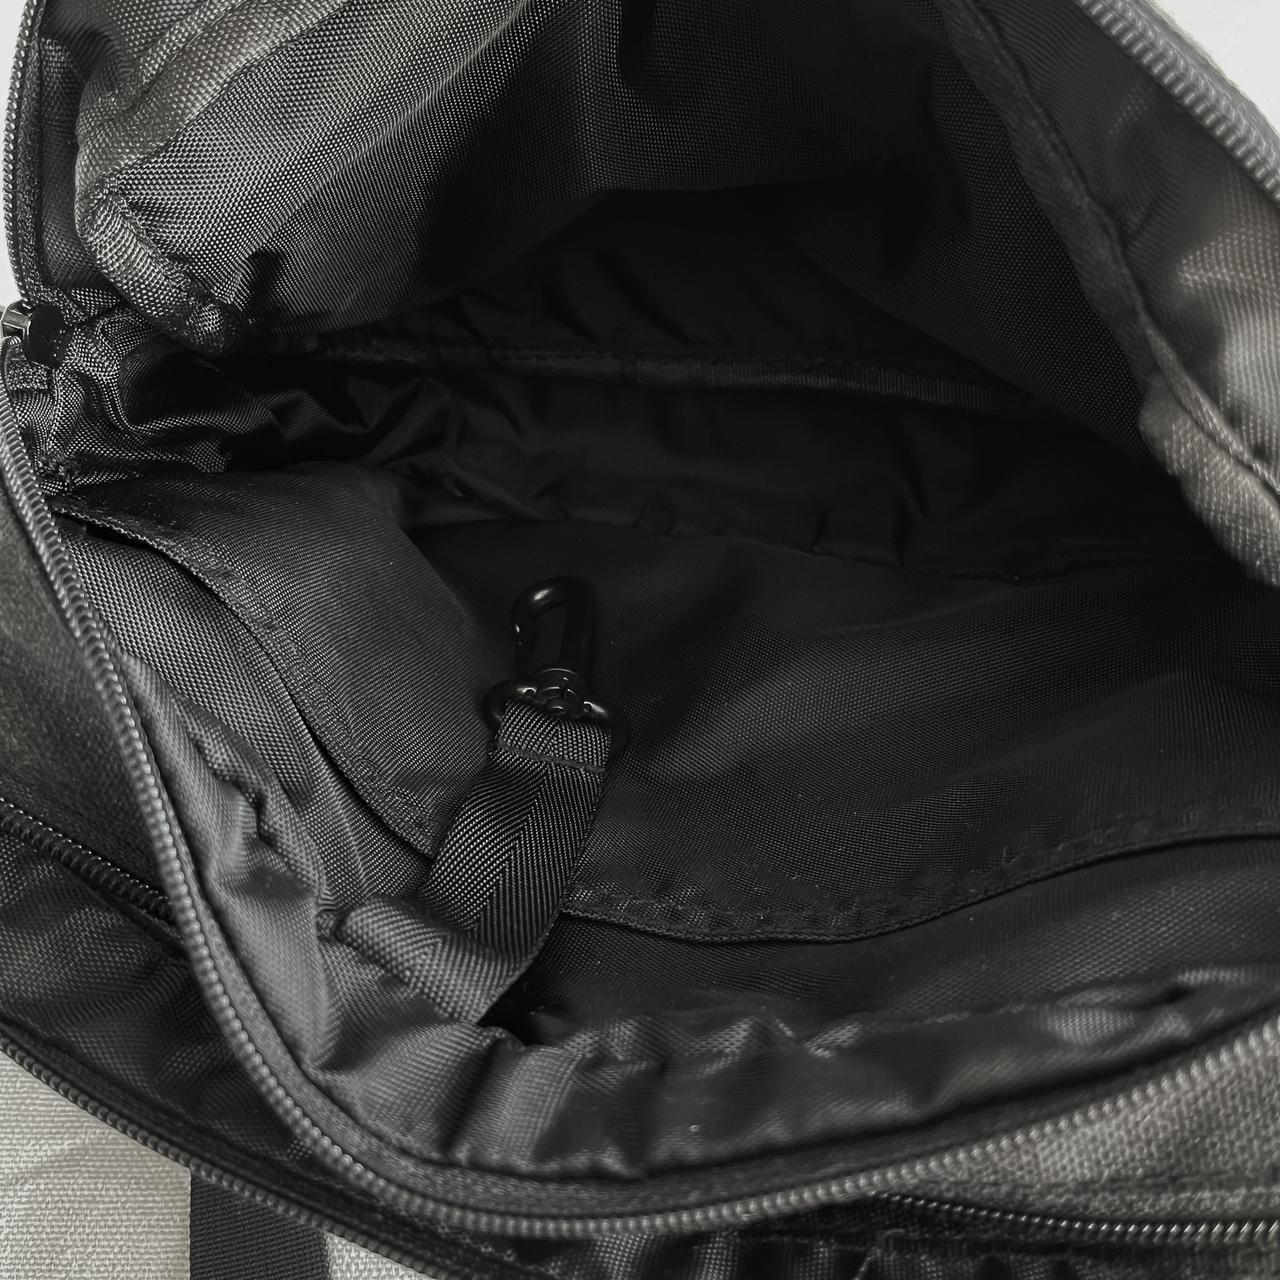 PLACES + FACES Shoulder Bag (Black) Great bag for... - Depop